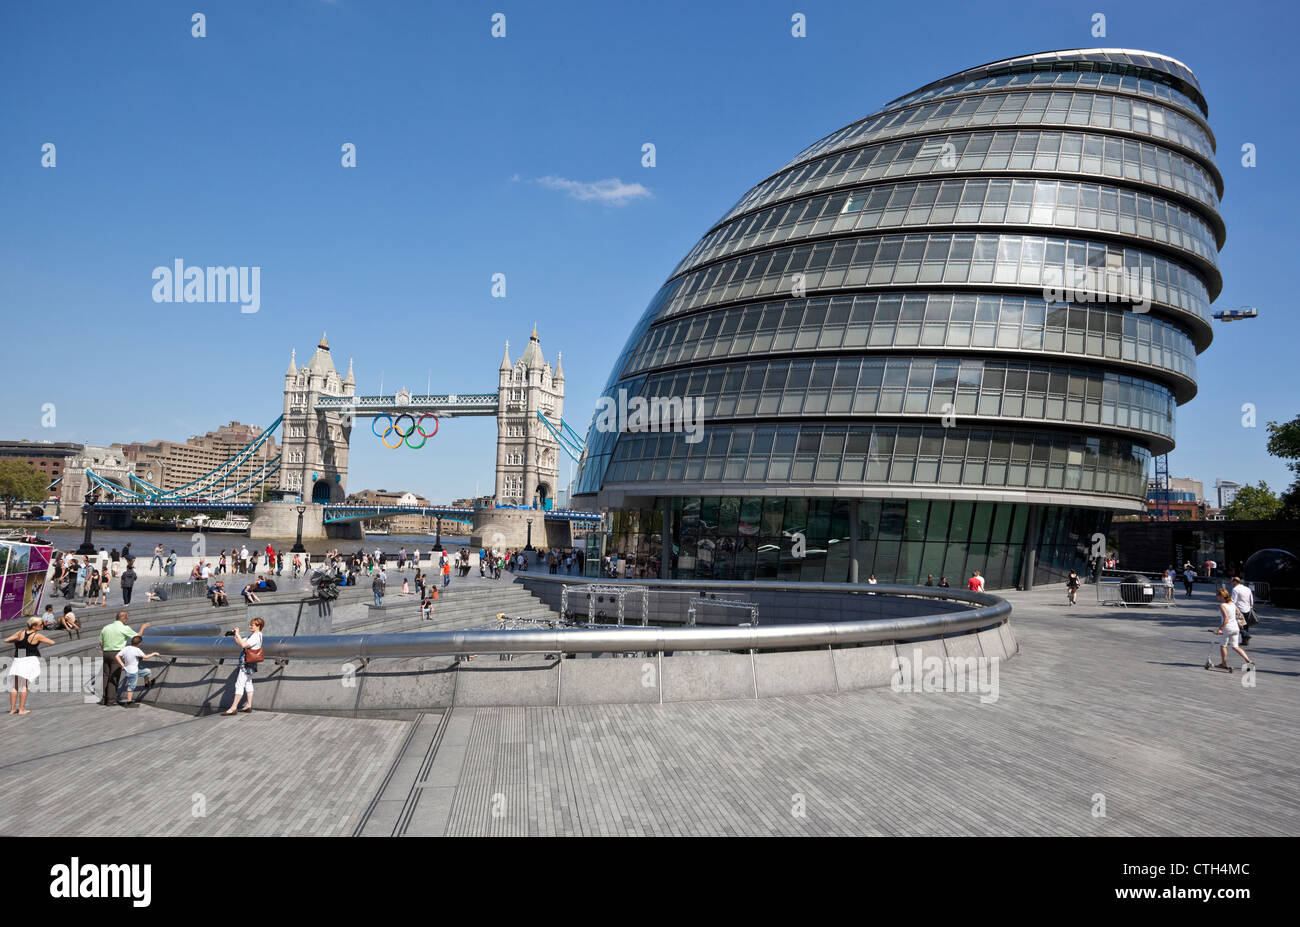 Municipio di Londra e al Tower Bridge in background, Borough di Southwark, London, SE1, Inghilterra, Regno Unito. Foto Stock